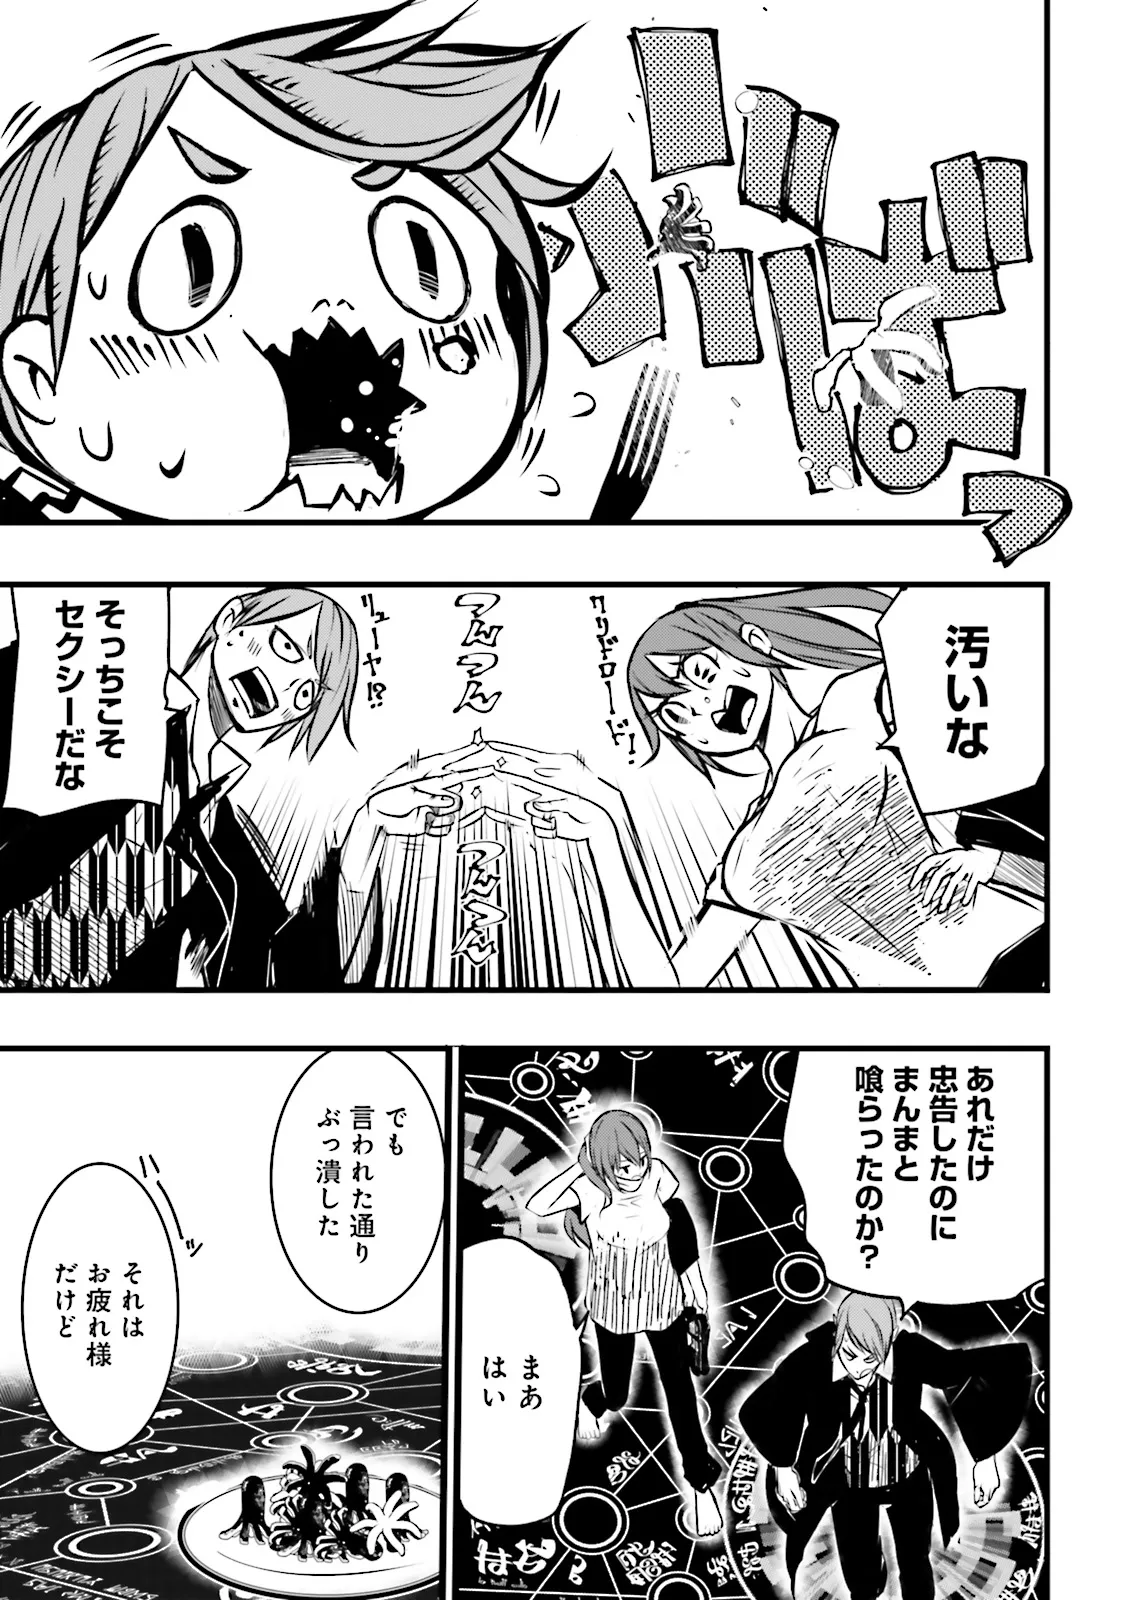 Sukiru Ga Nakereba Level wo Ageru ~ 99 Ga Kansuto No Sekai De Reberu 800 Man Kara Sutato ~ - Chapter 39.3 - Page 5